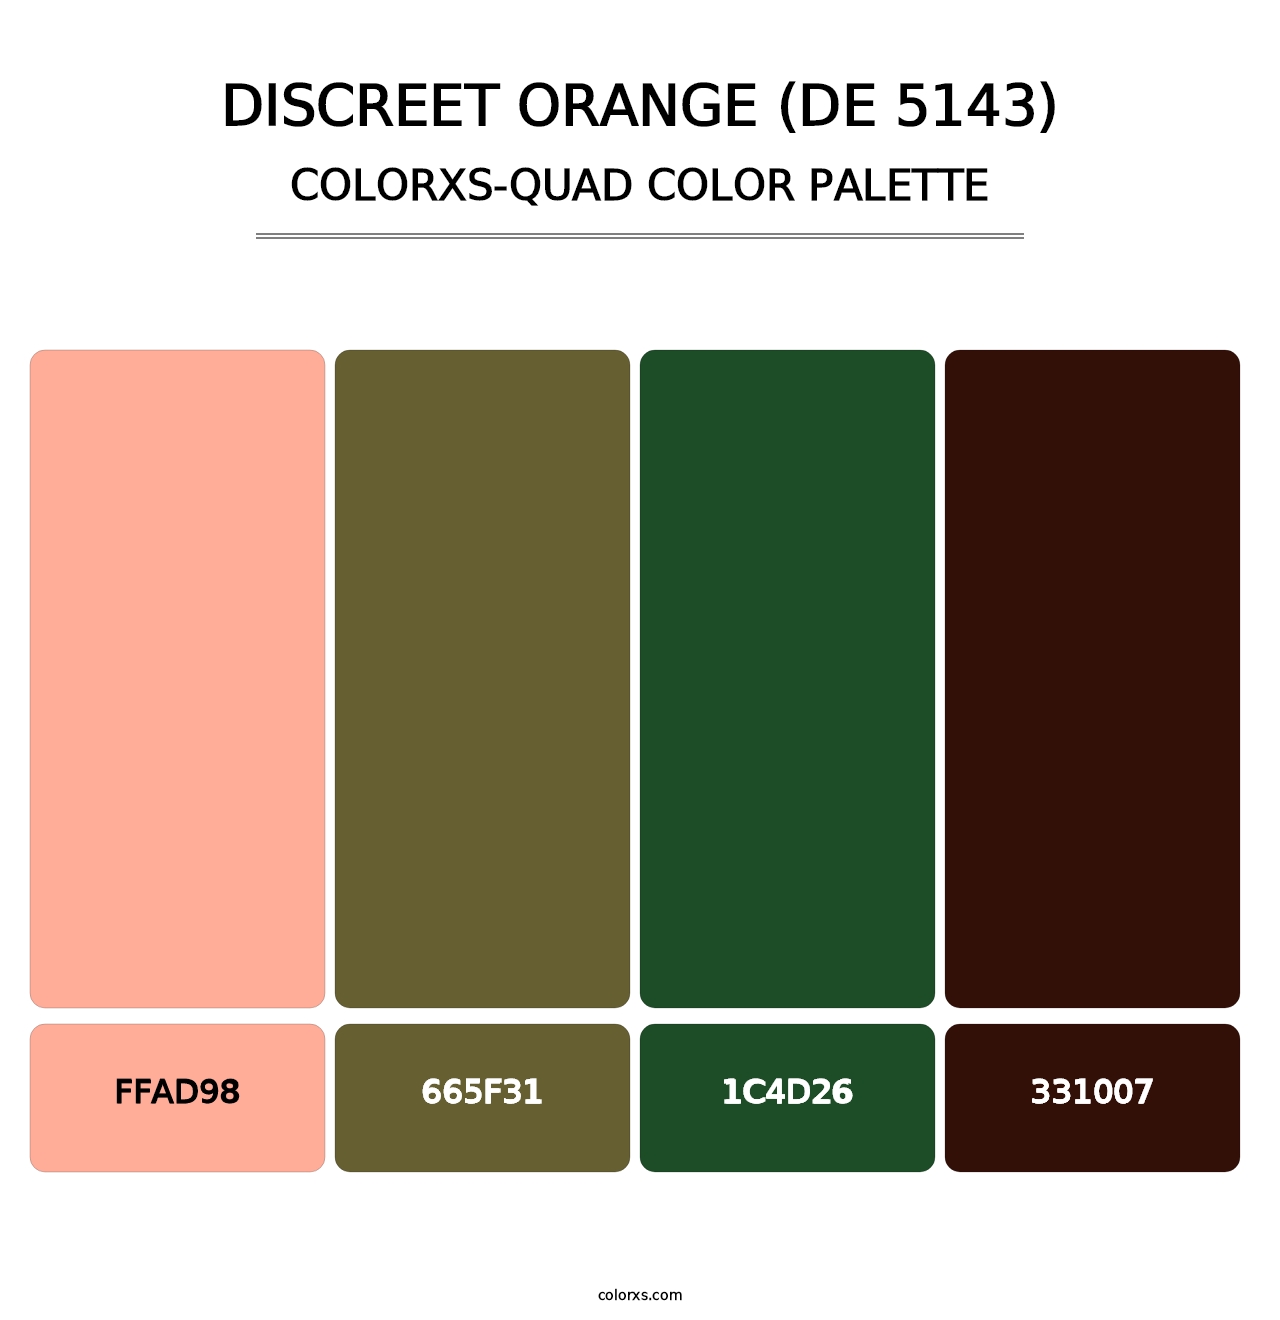 Discreet Orange (DE 5143) - Colorxs Quad Palette